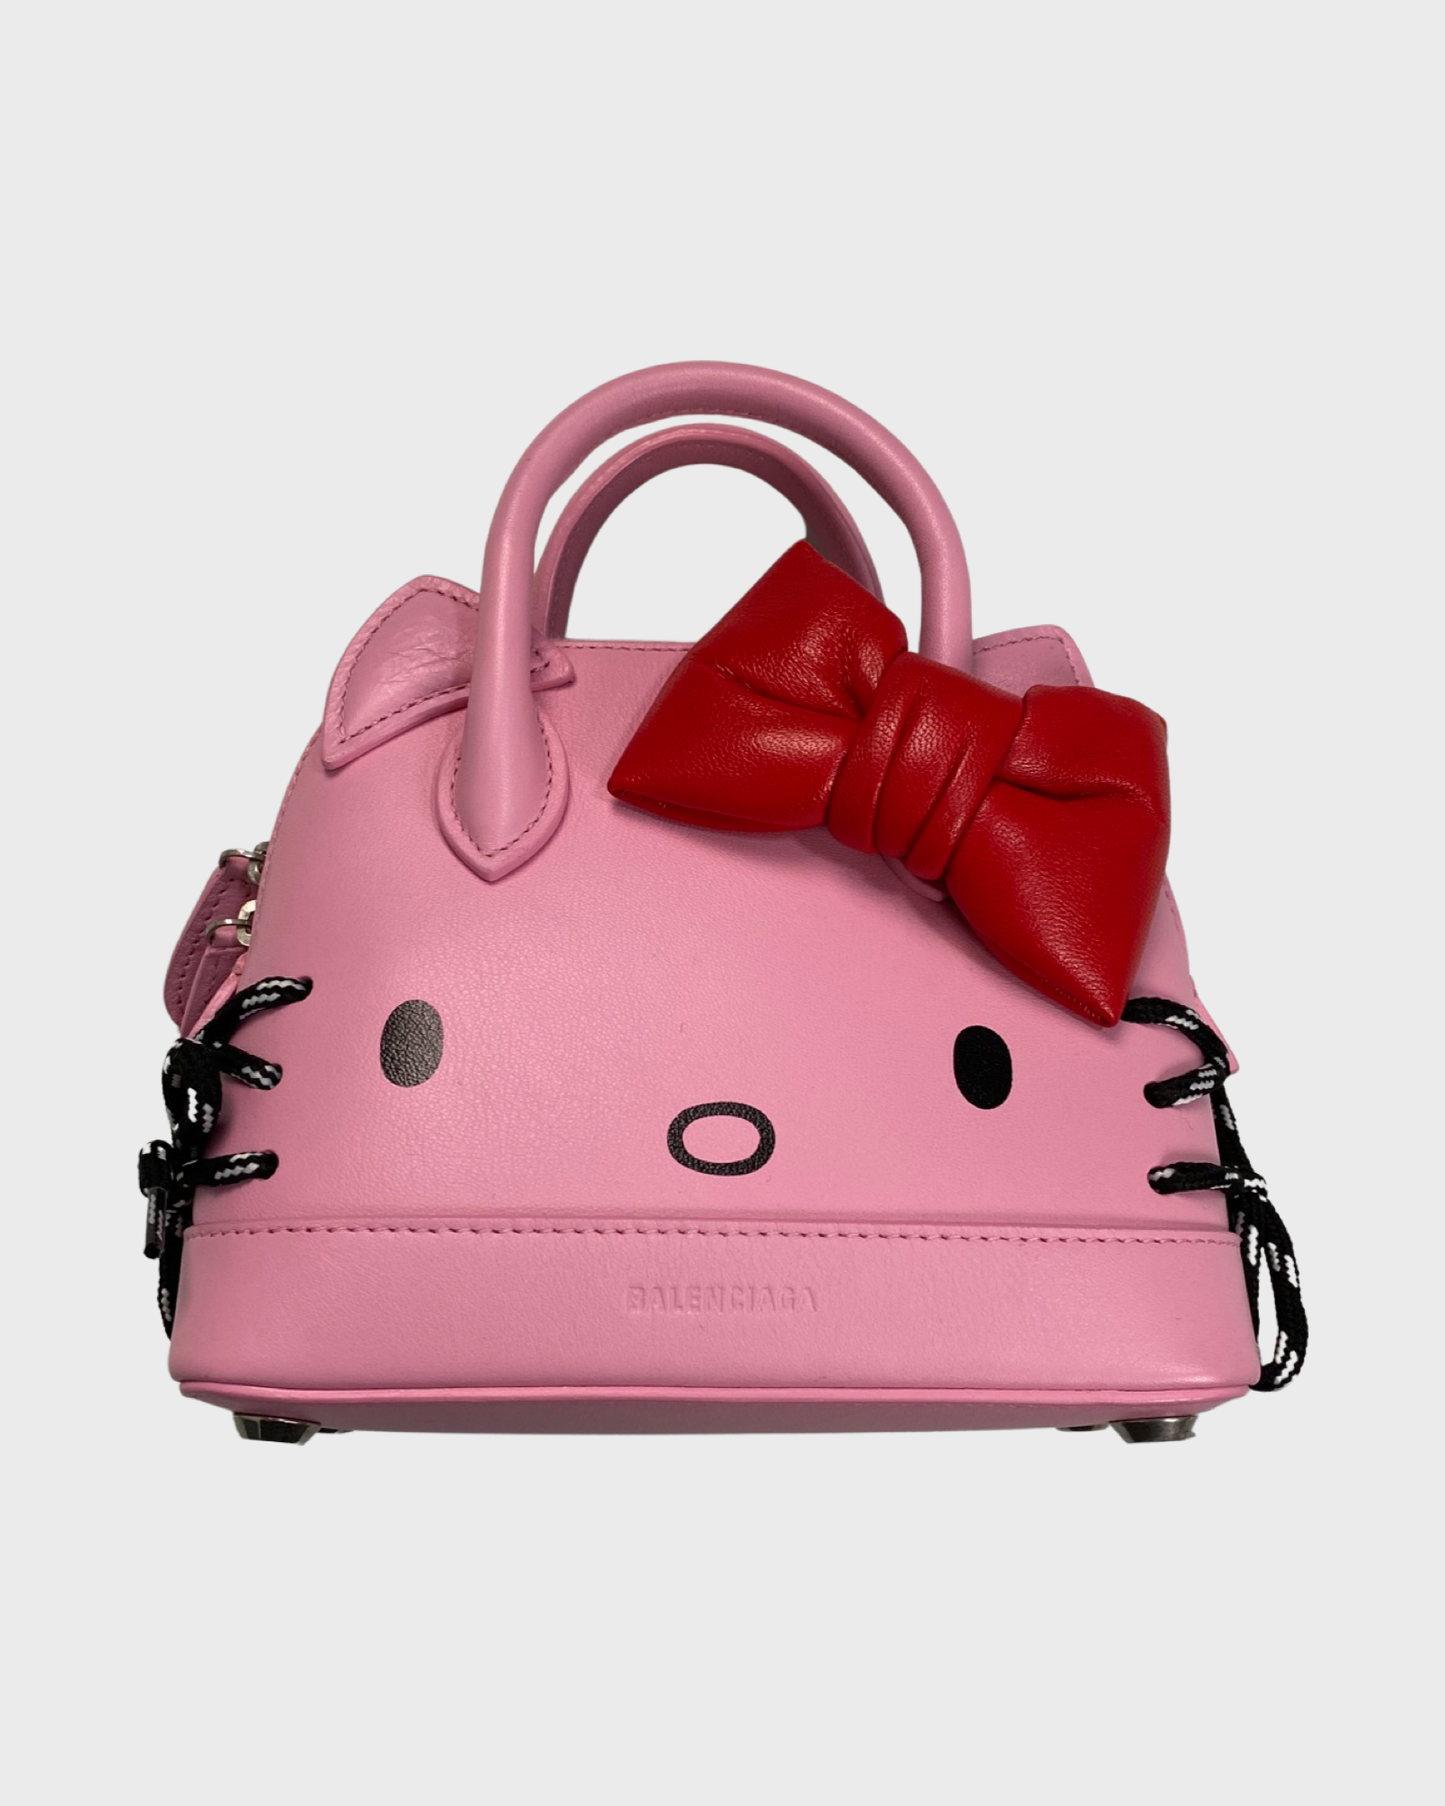 Balenciaga SS20 pink hello kitty bag SZ:S